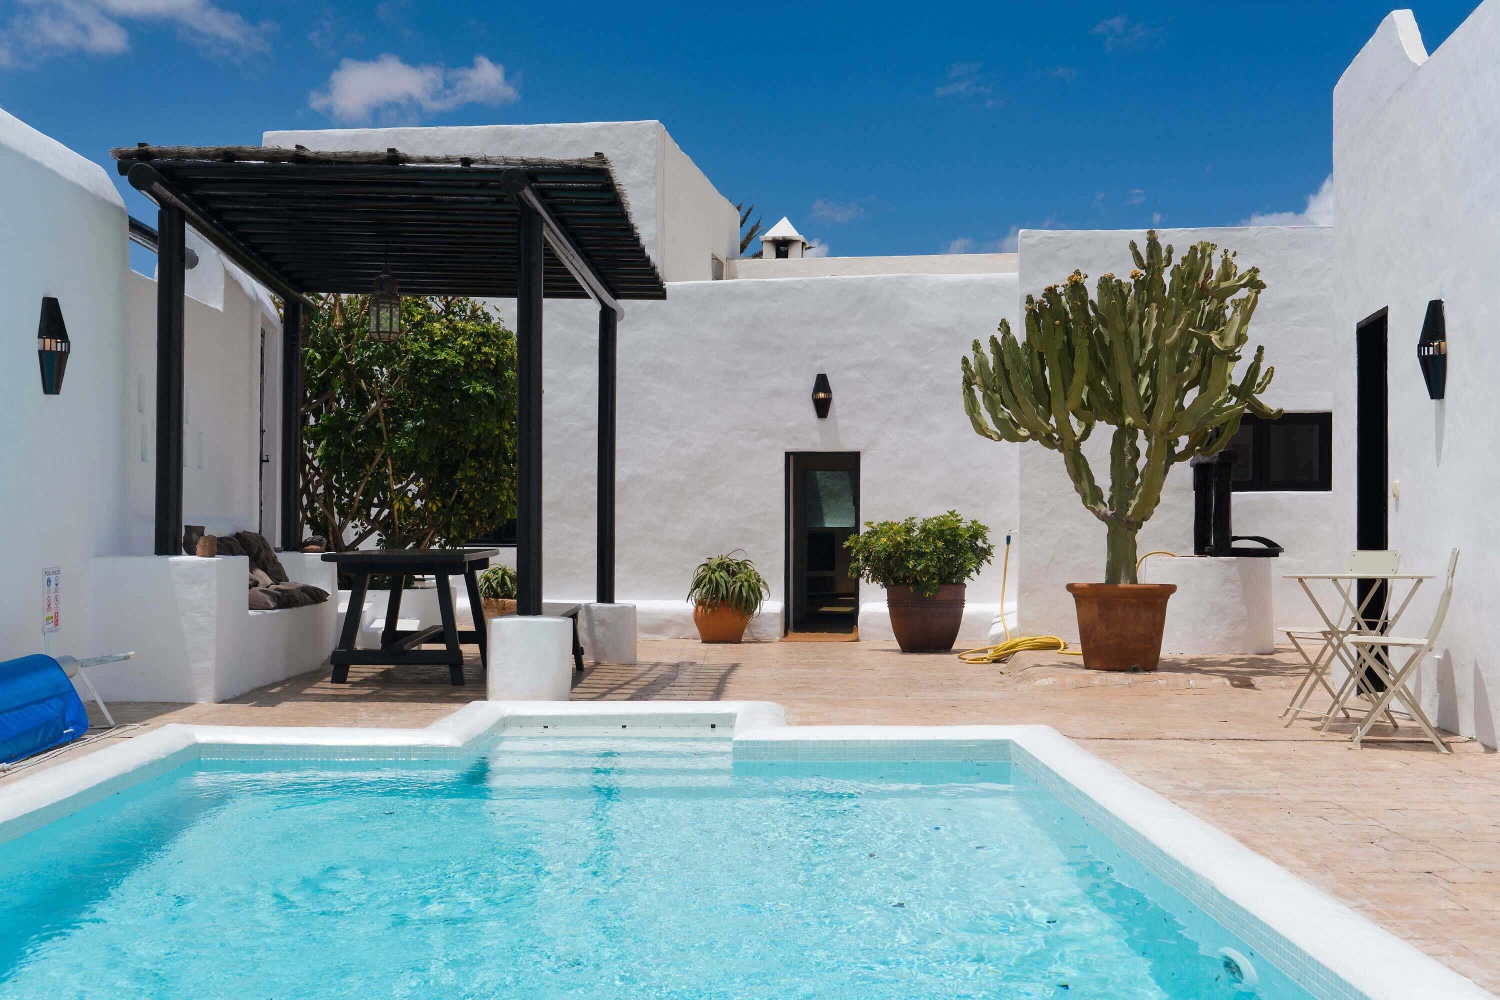 Luxusní dům s vlastním vyhřívaným bazénem a ideálním místem k prozkoumání zbytku Lanzarote